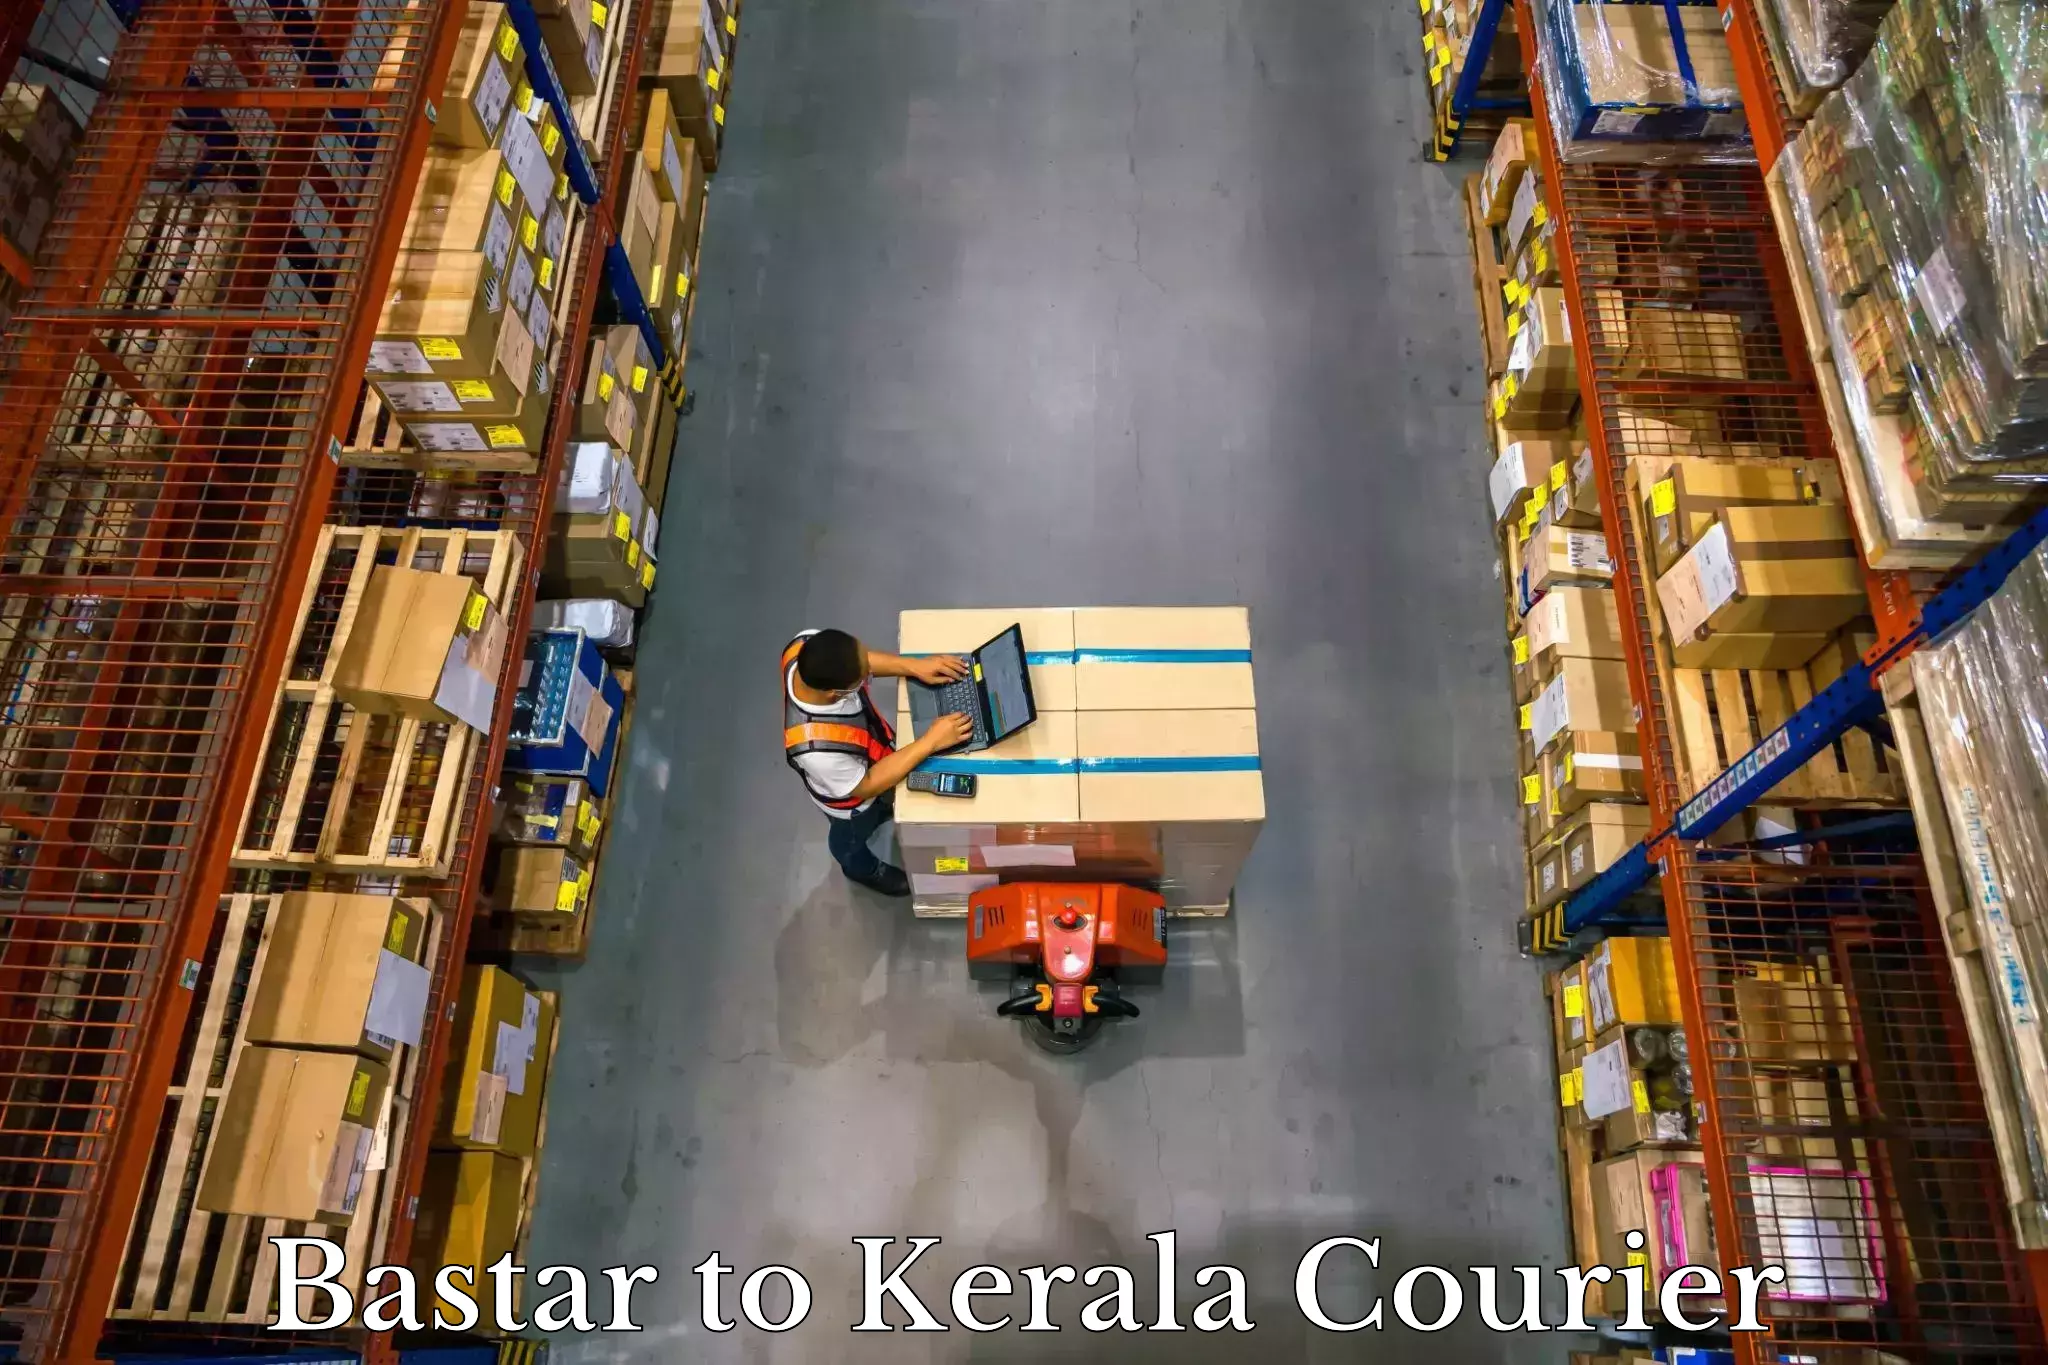 Automated luggage transport Bastar to Kerala